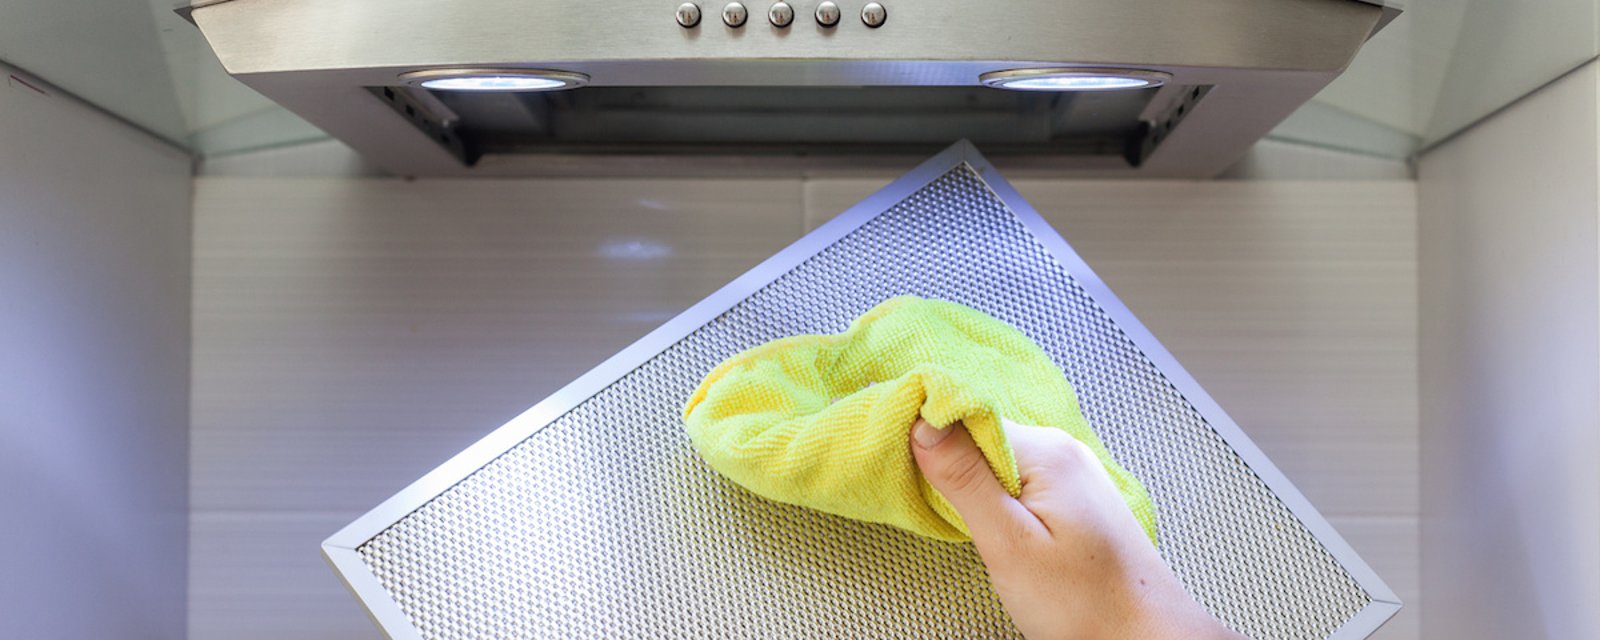 Nettoyez parfaitement votre hotte de cuisinière graisseuse en 3 étapes faciles